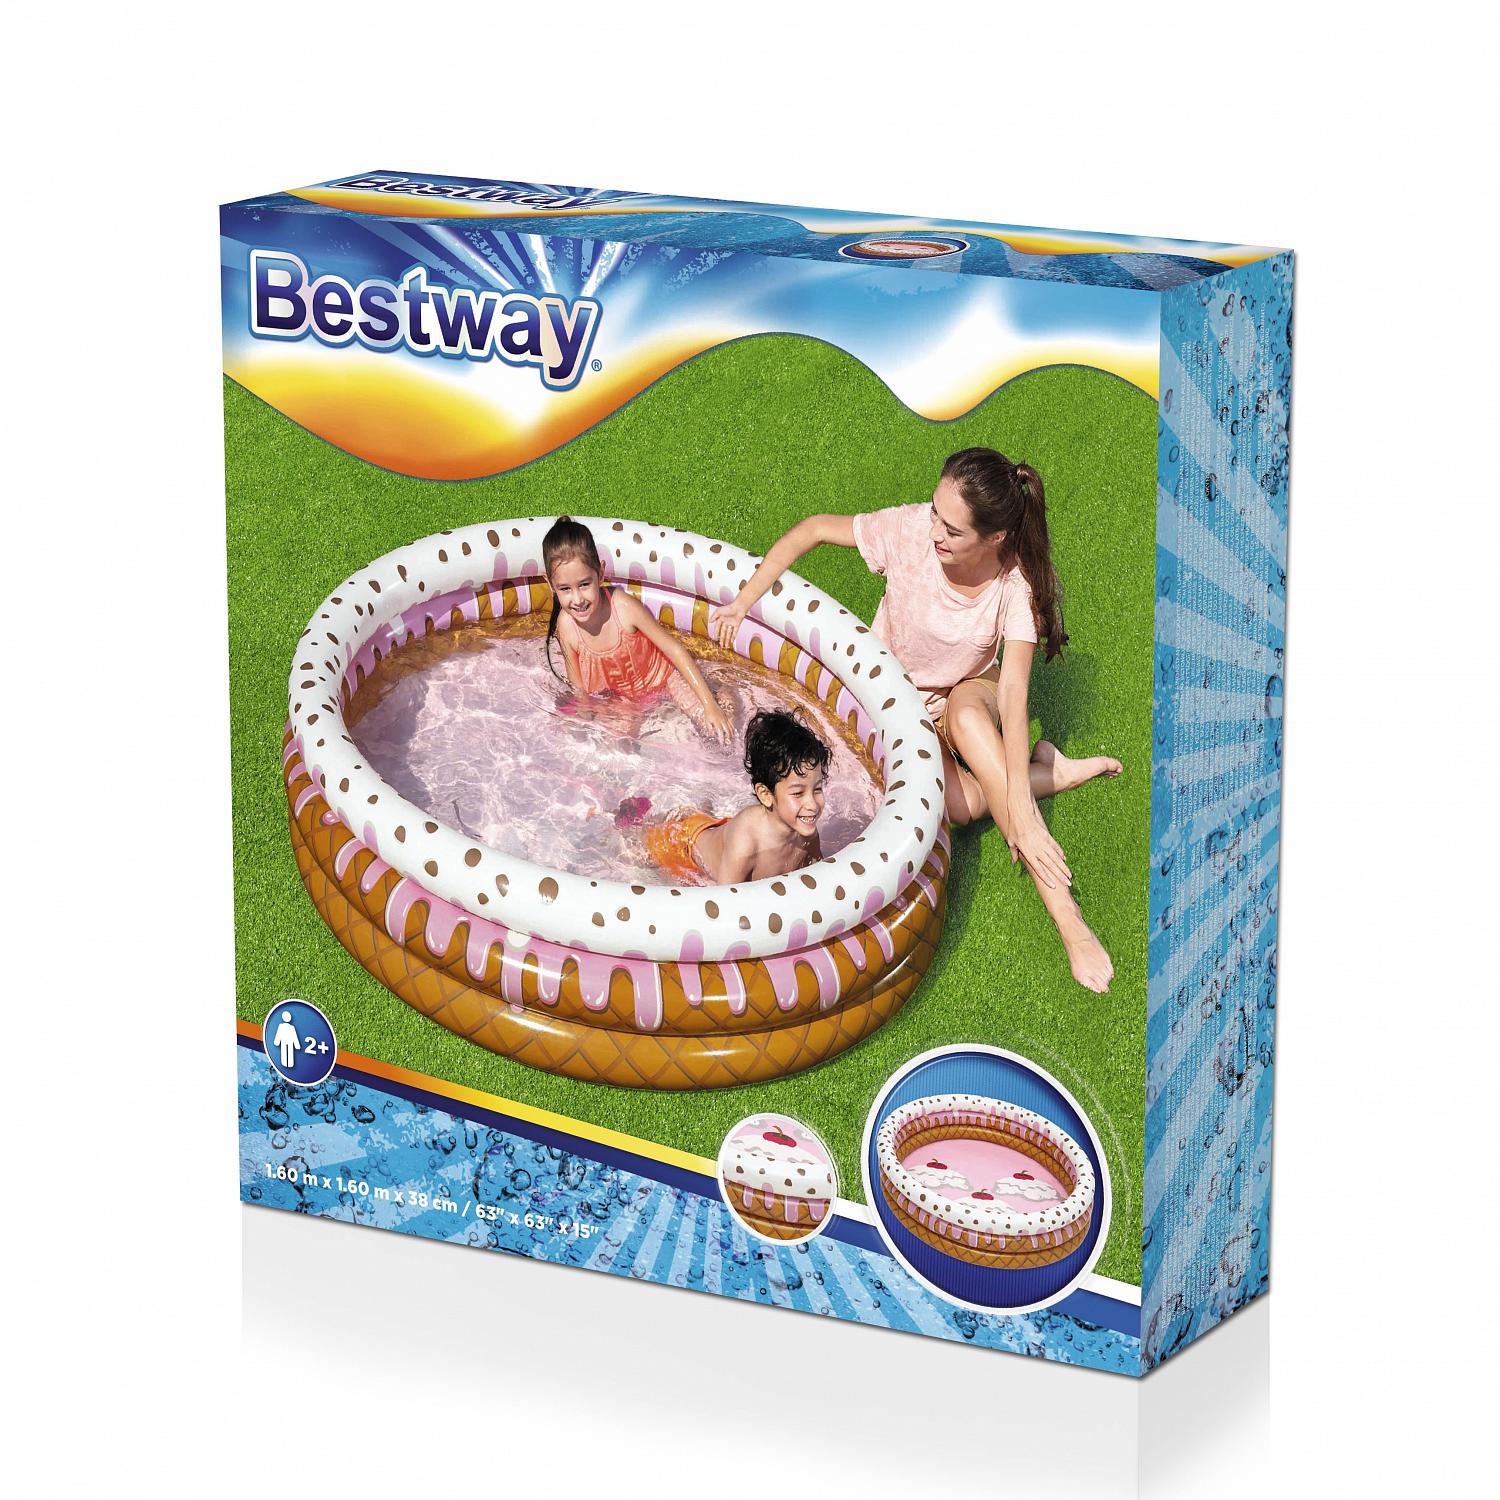 Детский надувной бассейн Bestway 160x38см Праздник мороженого 390л 51144 1500_1500